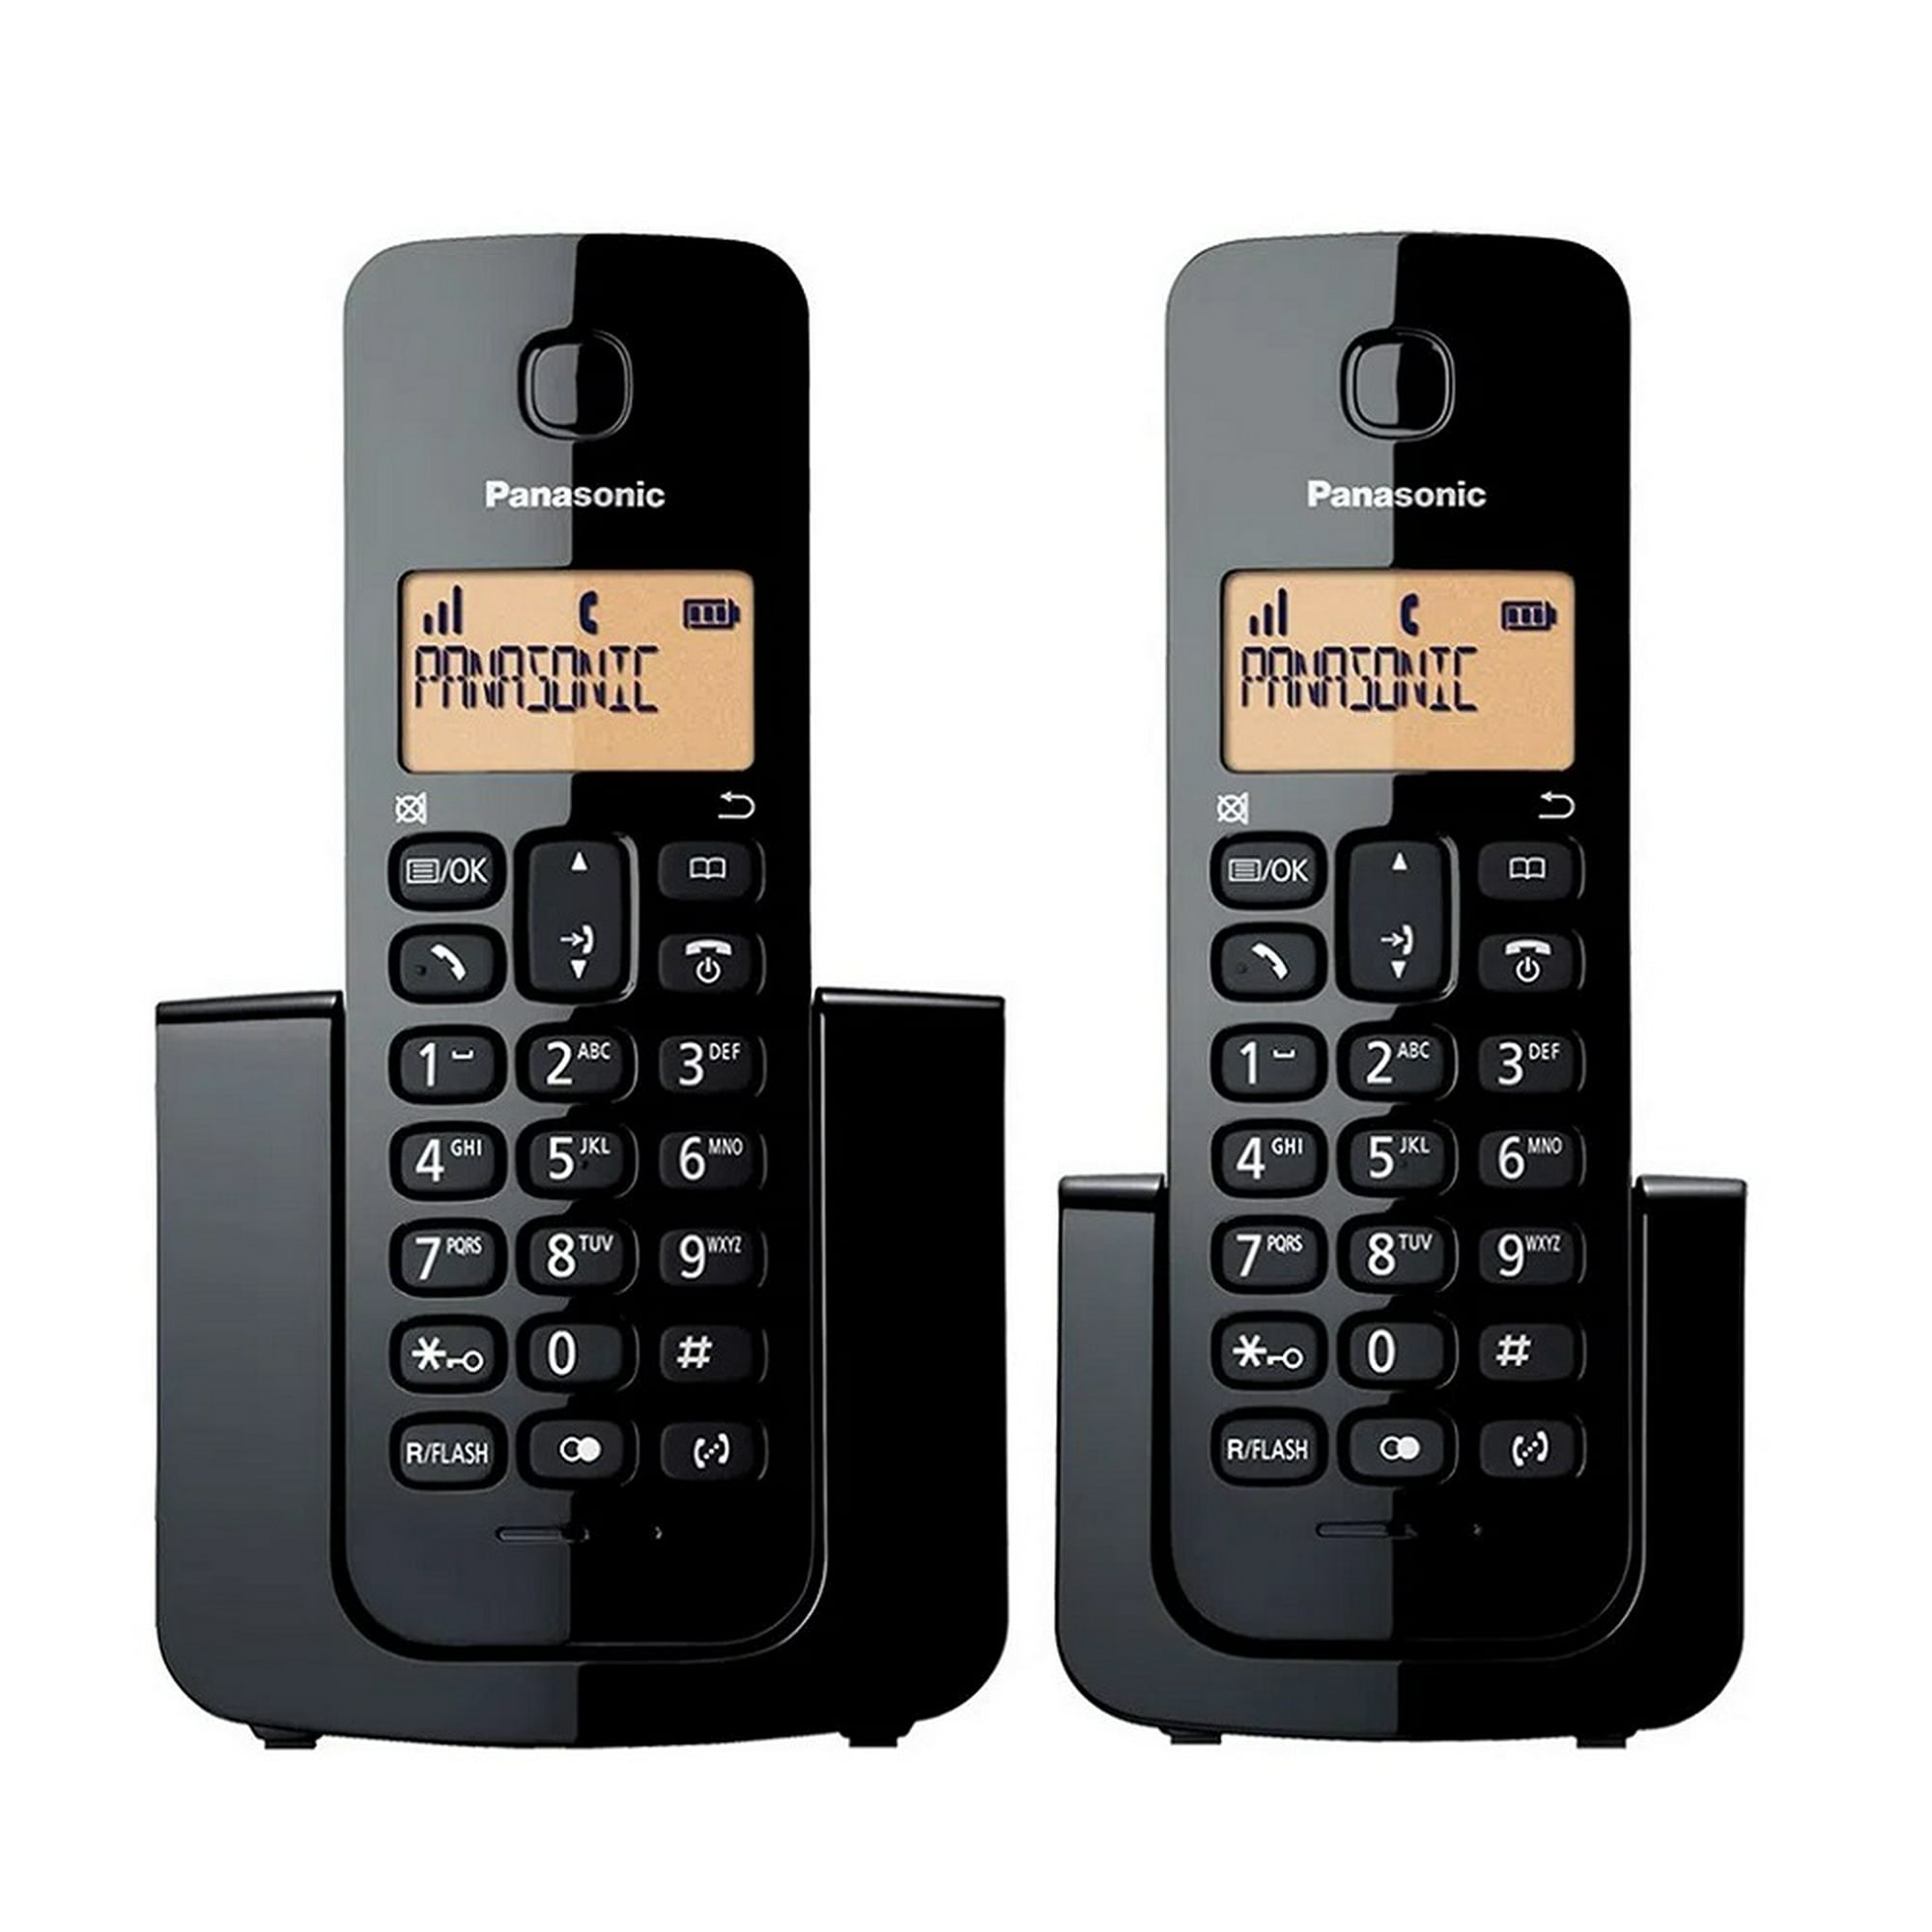 Teléfono Inalámbrico Panasonic con Identificador de llamadas